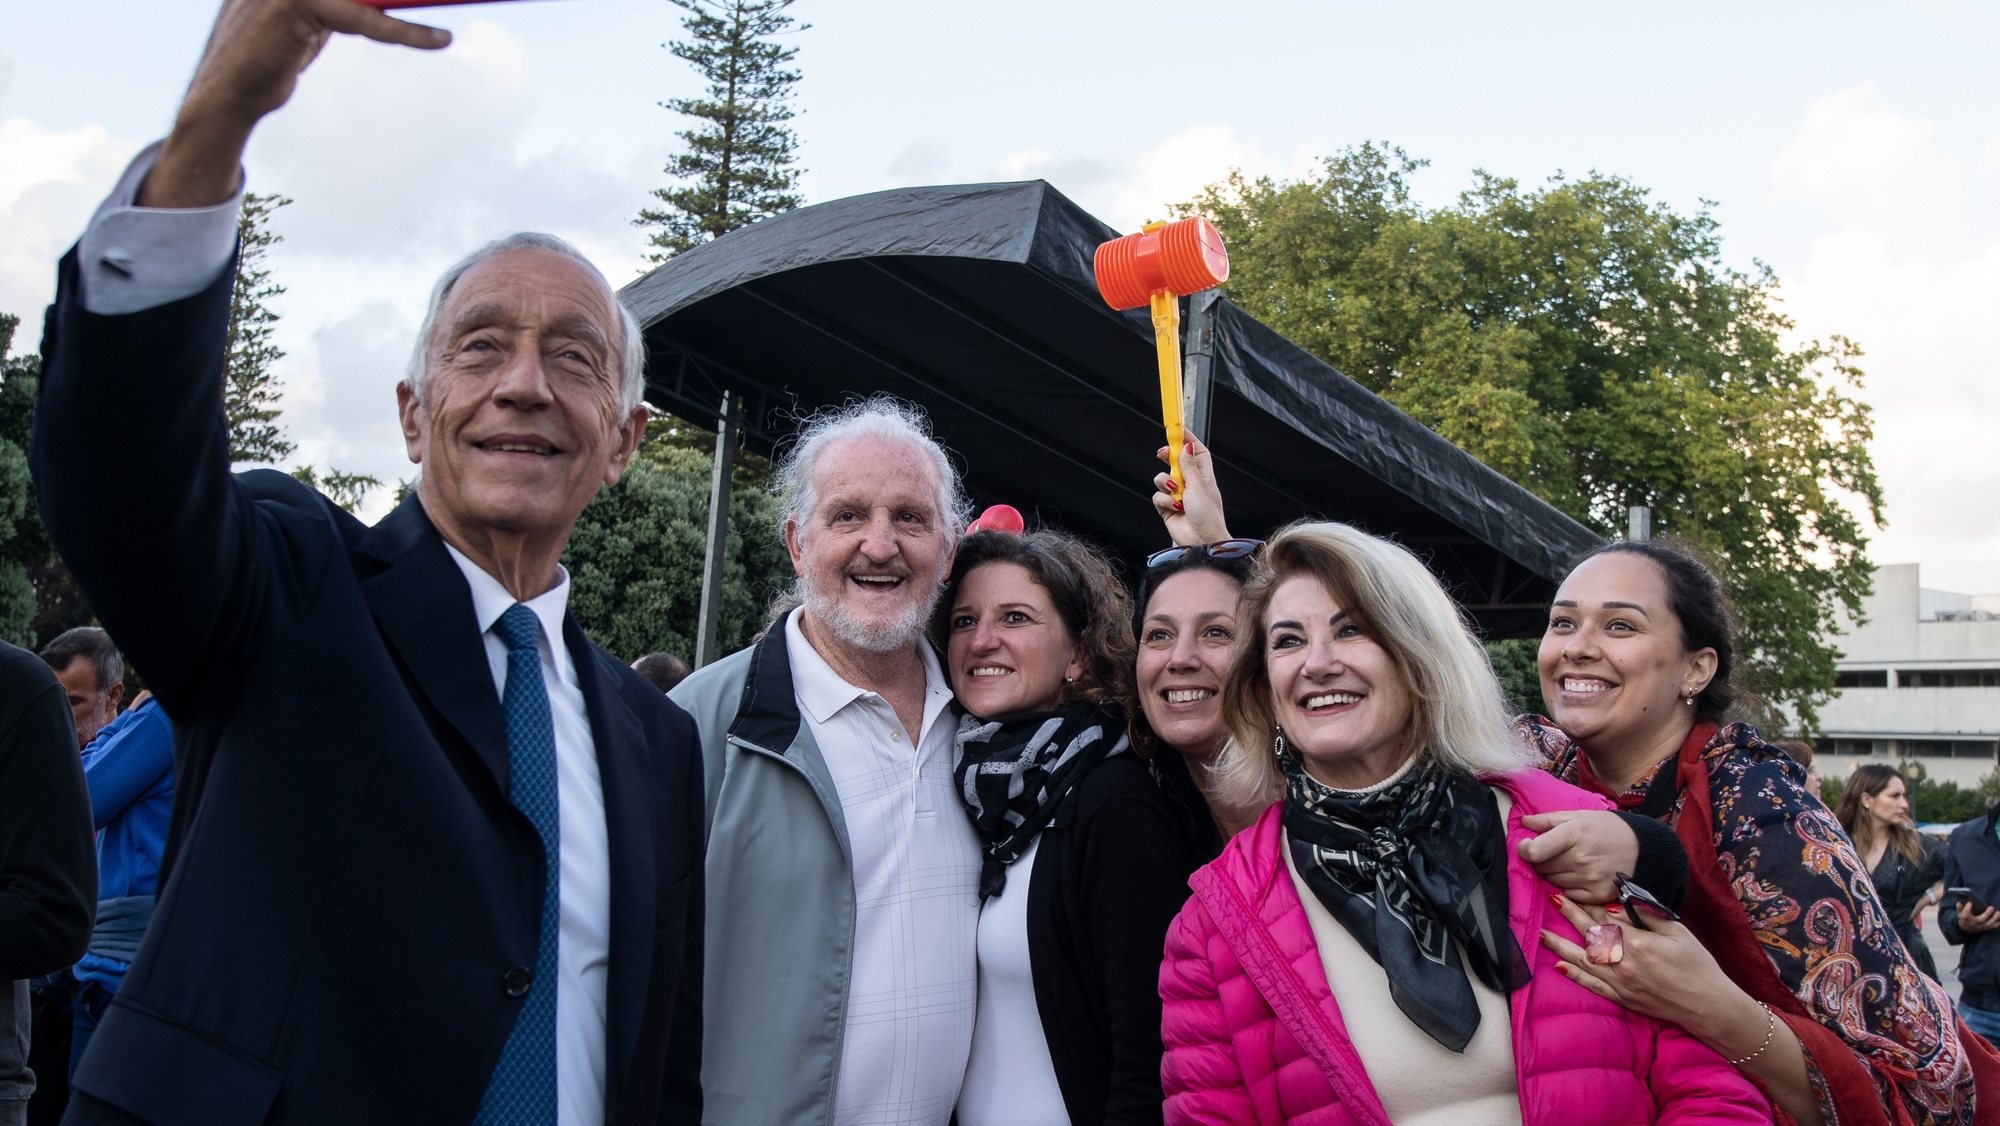 O Presidente da Republica, Marcelo Rebelo de Sousa (E), tira uma selfie com populares, nos jardins do Palácio de Cristal, na noite de São João, no Porto, 23 de junho de 2022. RUI MANUEL FARINHA/LUSA